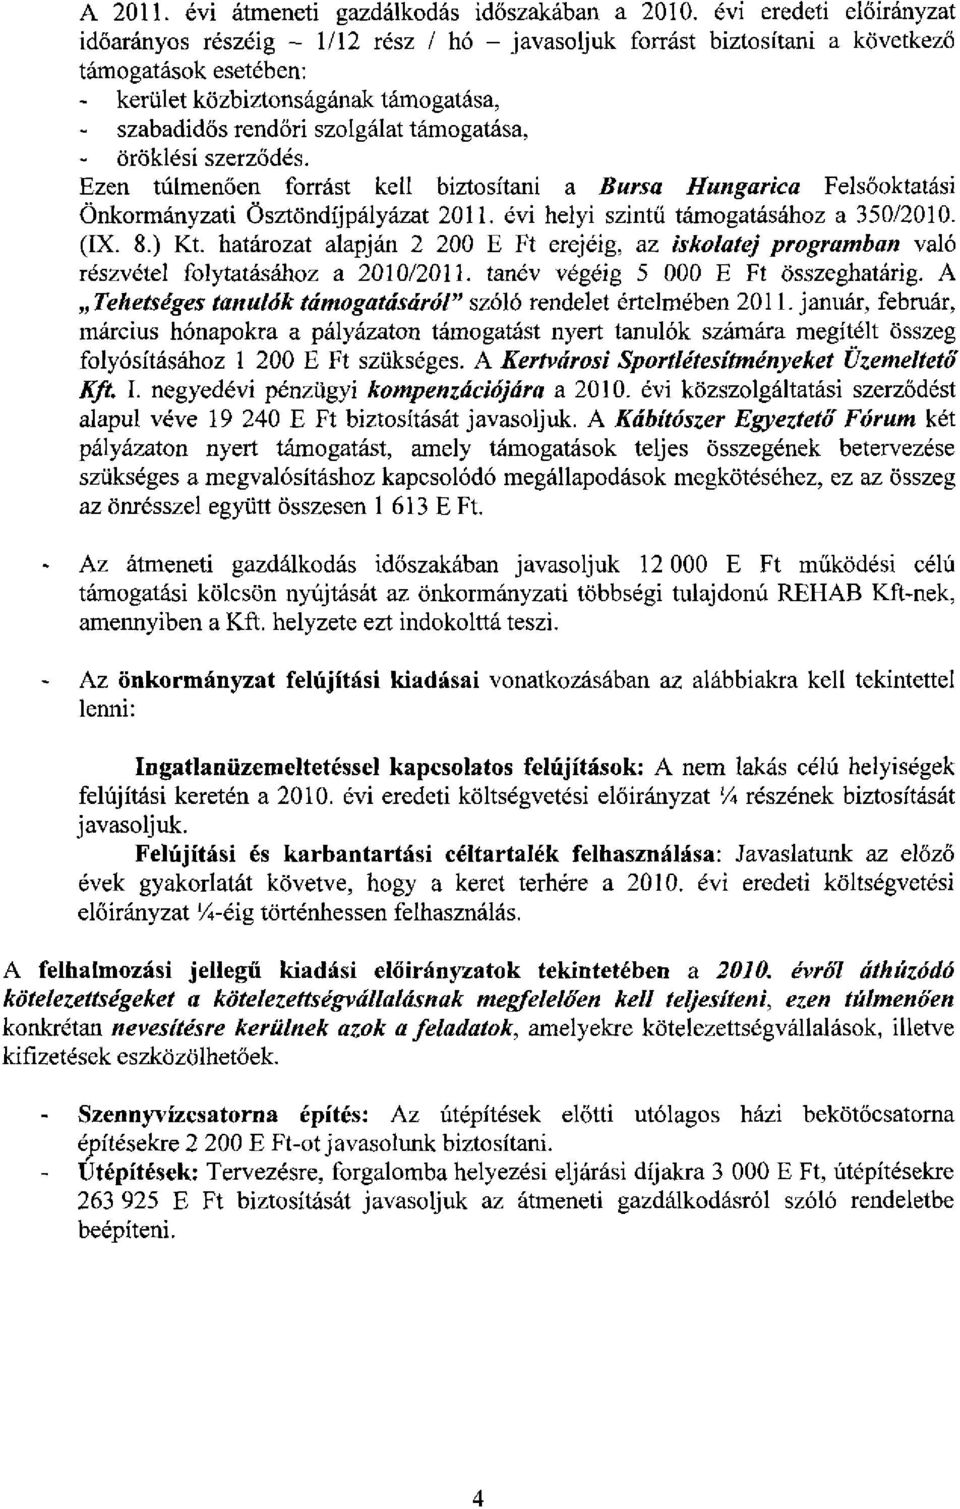 támogatása, öröklési szerződés. Ezen túlmenően forrást kell biztosítani a Bursa Hungarica Felsőoktatási Önkormányzati Ösztöndíjpályázat 2011. évi helyi szintű támogatásához a 350/2010. (IX. 8.) Kt.